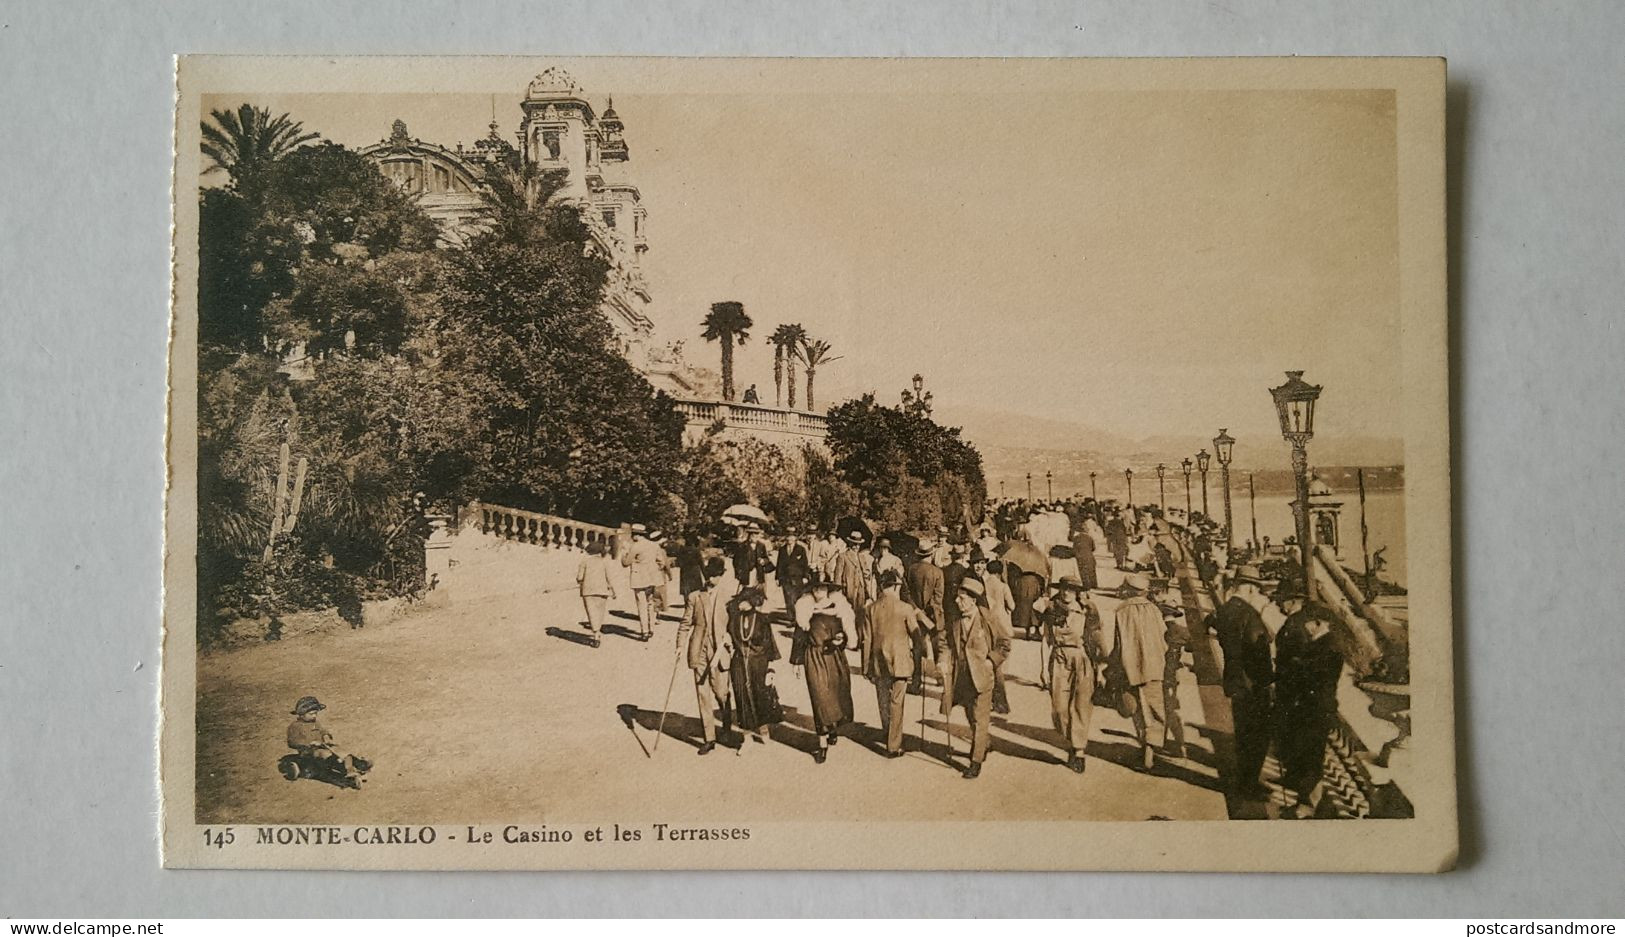 Monaco Monte Carlo Lot of 20 unused postcards Edition Madame Gonod Monte-Carlo ca. 1925